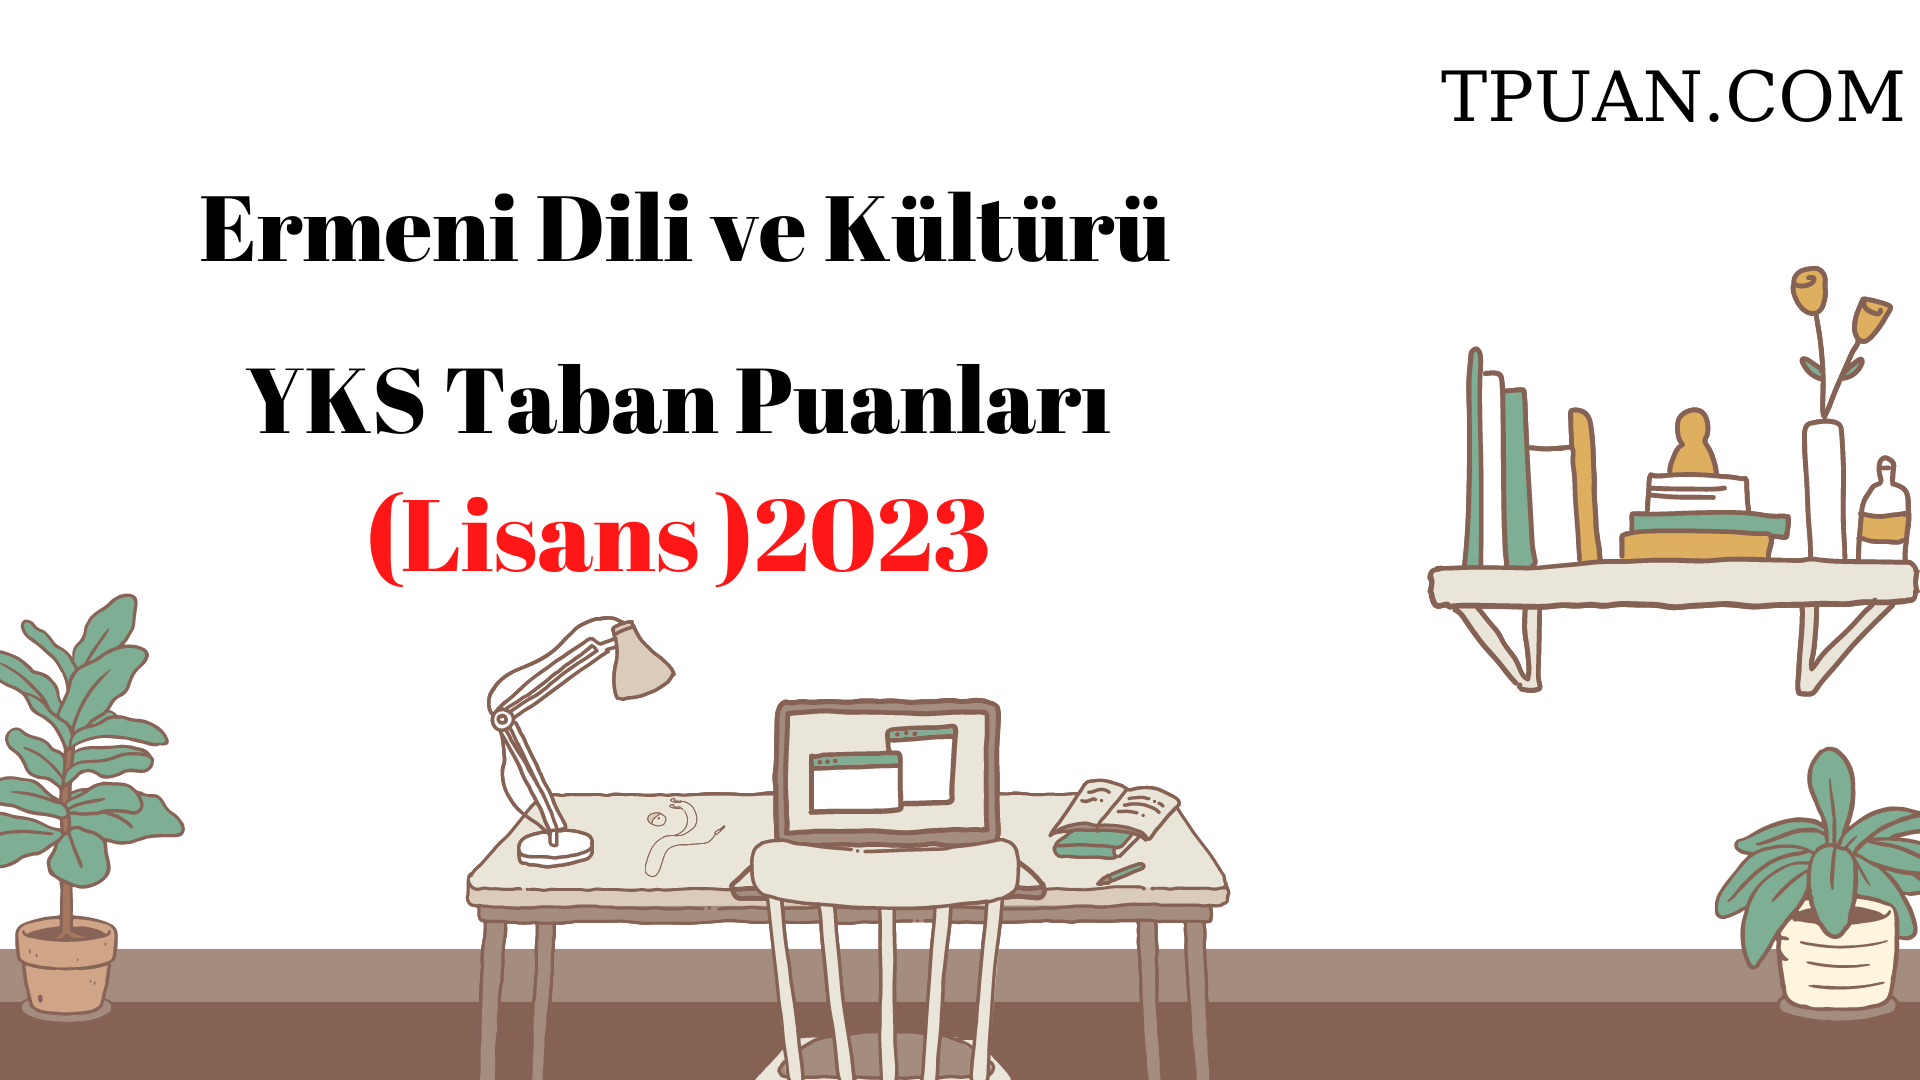  Ermeni Dili ve Kültürü Bölümü YKS Taban Puanları (4 Yıllık) 2023